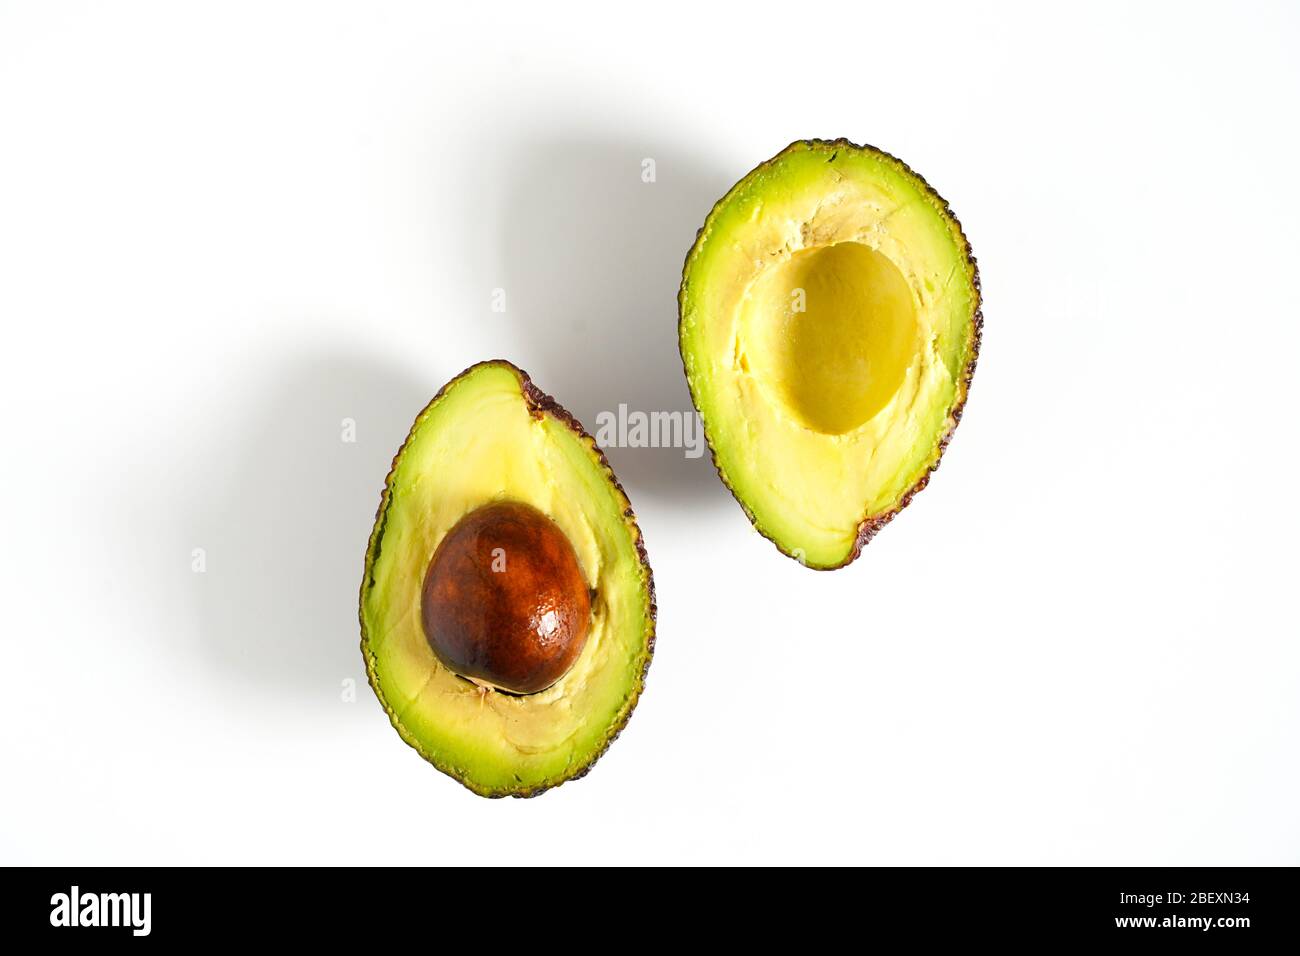 Ein Avocado, das in zwei Hälften geschnitten wurde, um den Kern vor einem weißen Hintergrund zu enthüllen Stockfoto